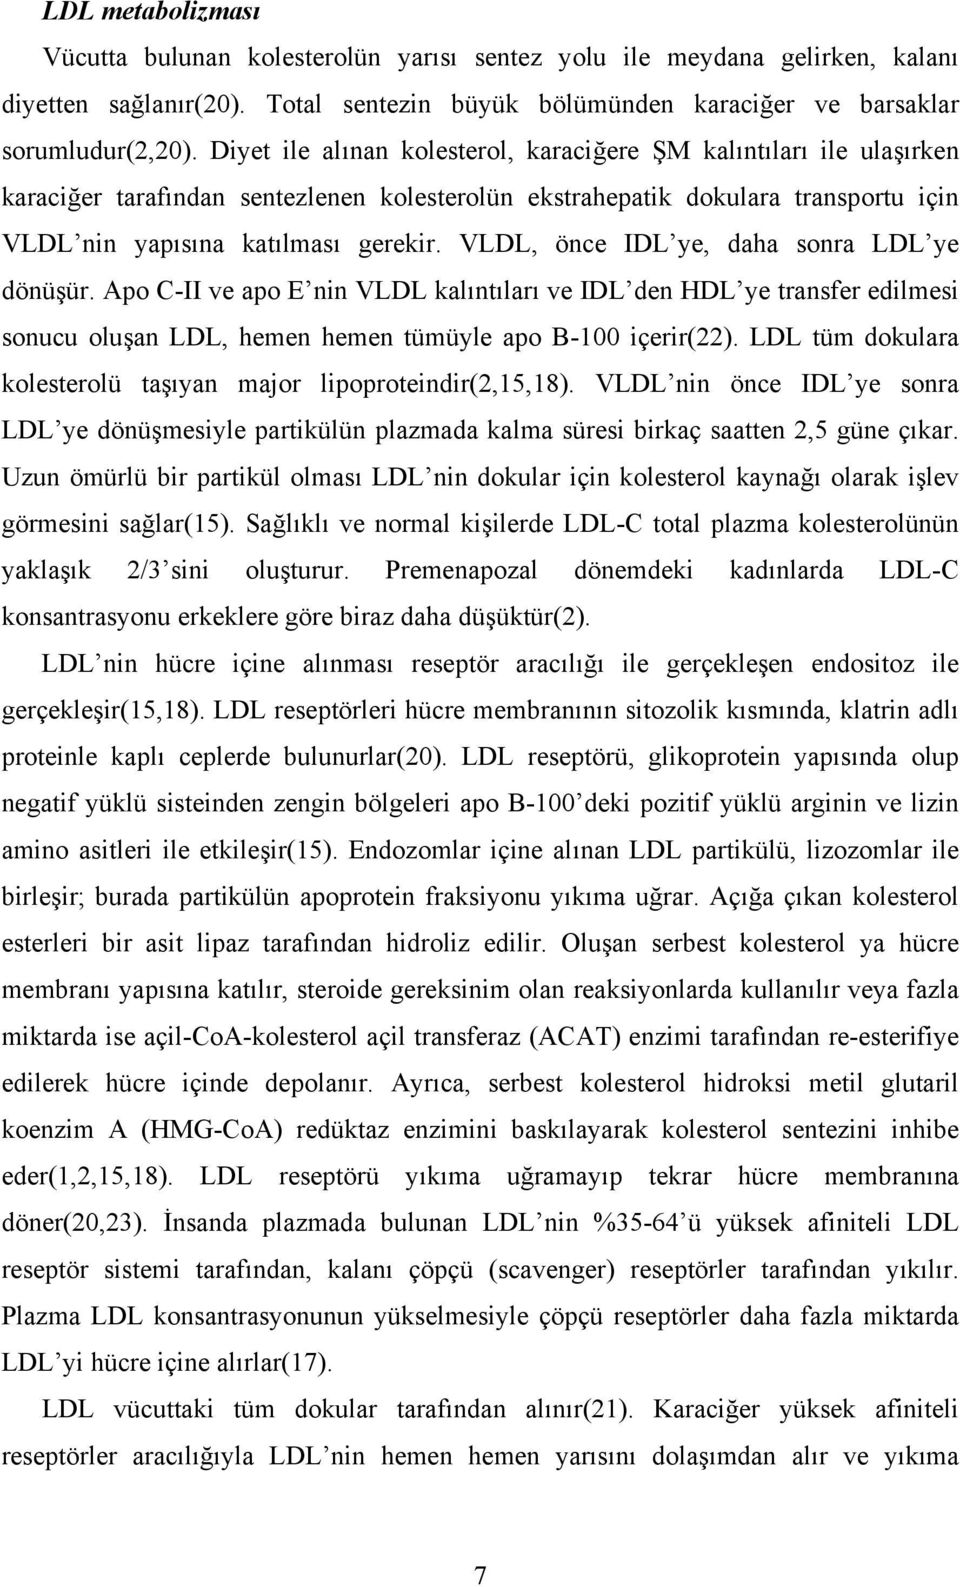 VLDL, önce IDL ye, daha sonra LDL ye dönüşür. Apo C-II ve apo E nin VLDL kalıntıları ve IDL den HDL ye transfer edilmesi sonucu oluşan LDL, hemen hemen tümüyle apo B-100 içerir(22).